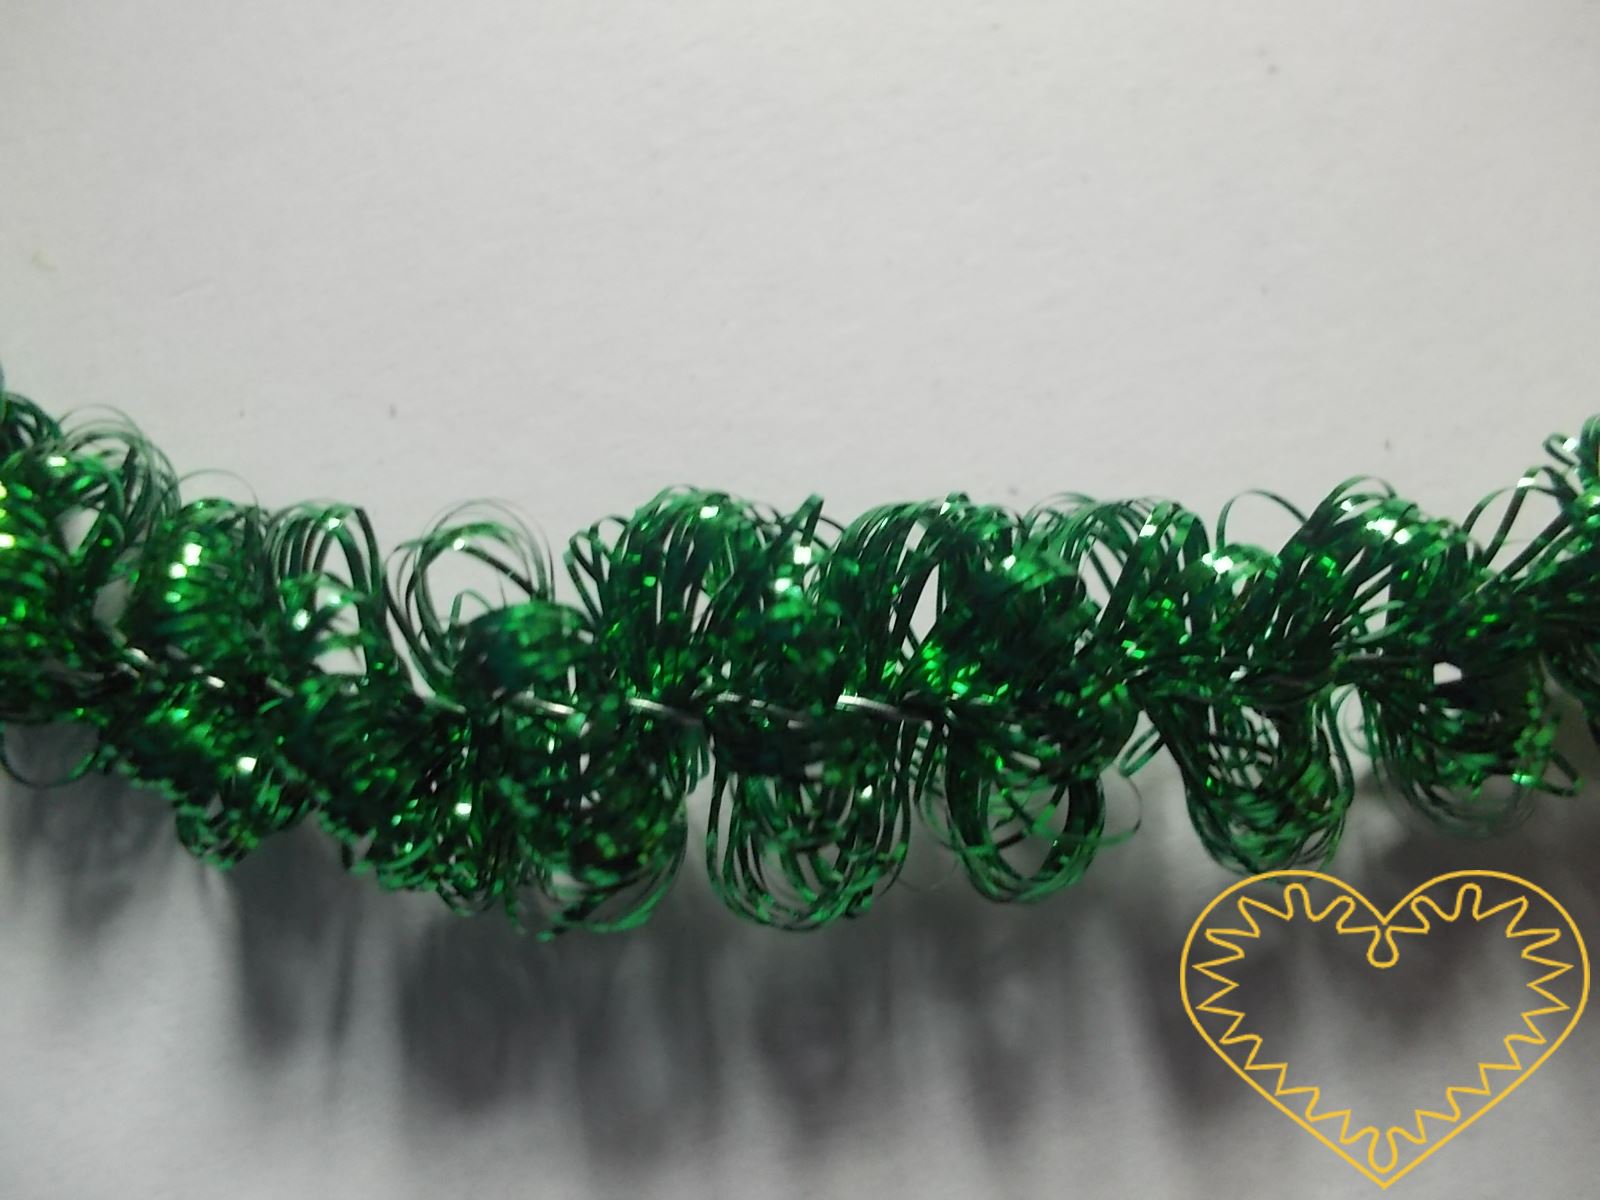 Zelená žinylka s drátkem Ø 1 cm, délka 4 m. Díky tomu, že kostru tvoří drátek, dá se tato žinylka různě ohýbat a dobře drží tvar. Najde široké uplatnění při nejrůznějších tvůrčích činnostech.